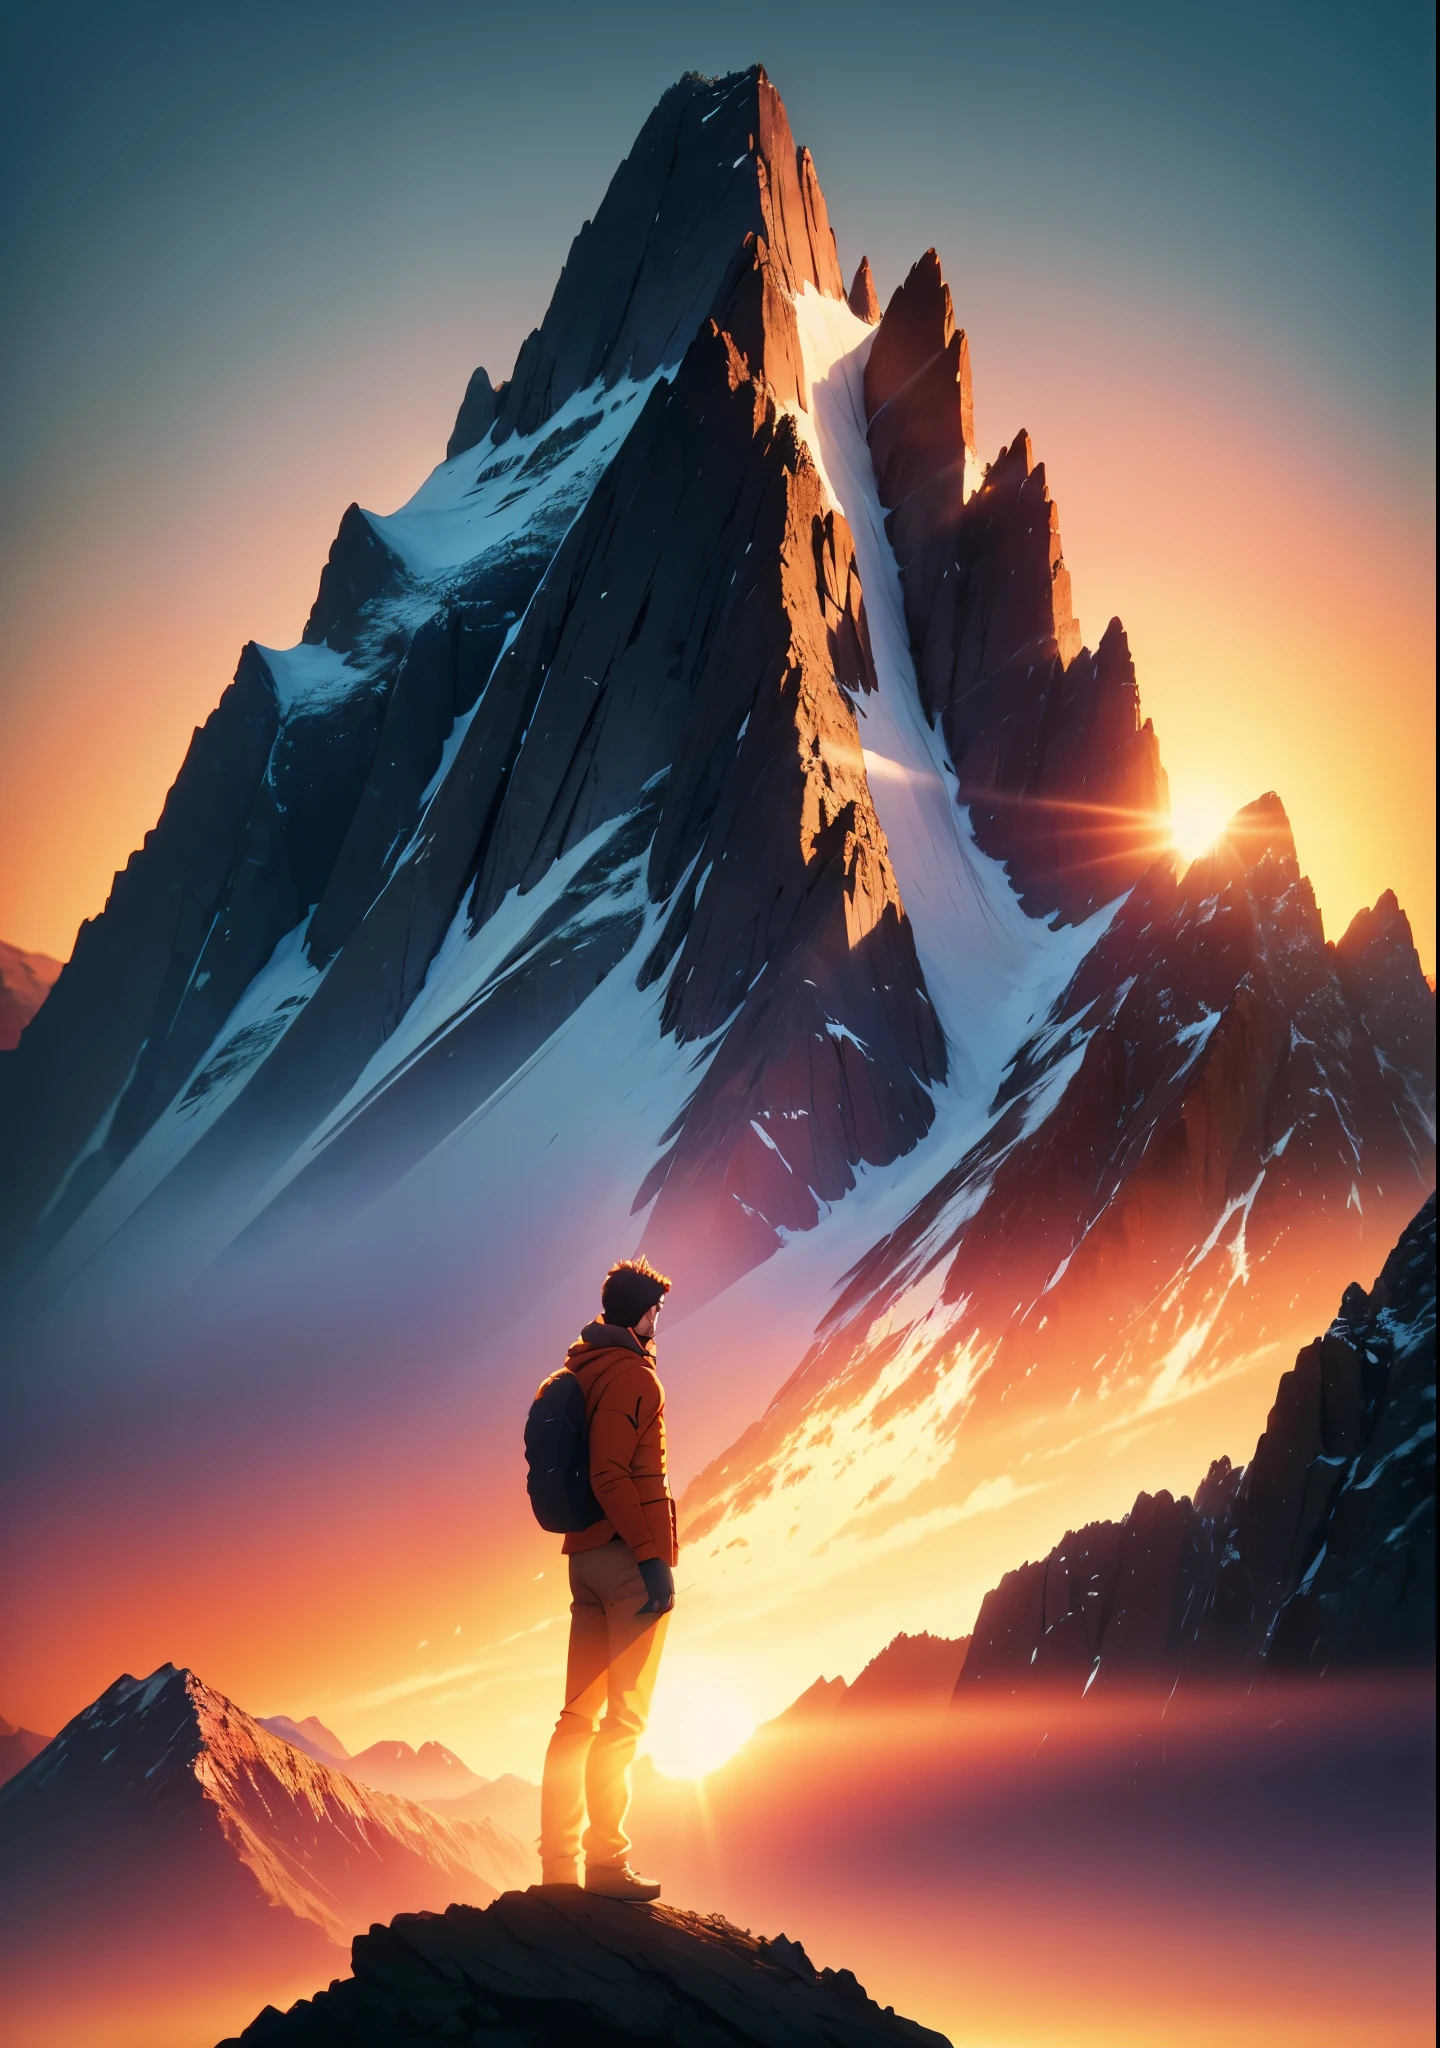 动画图：一名男子站在高耸的山脉边缘, 背对观众, 太阳在山峰后灿烂地升起, 创造戏剧性的背光效果. 人体轮廓应该传达出一种雄心和抱负的感觉. 融入温暖的橙色渐变, 红衣男子, 并强调日出和剪影效果.